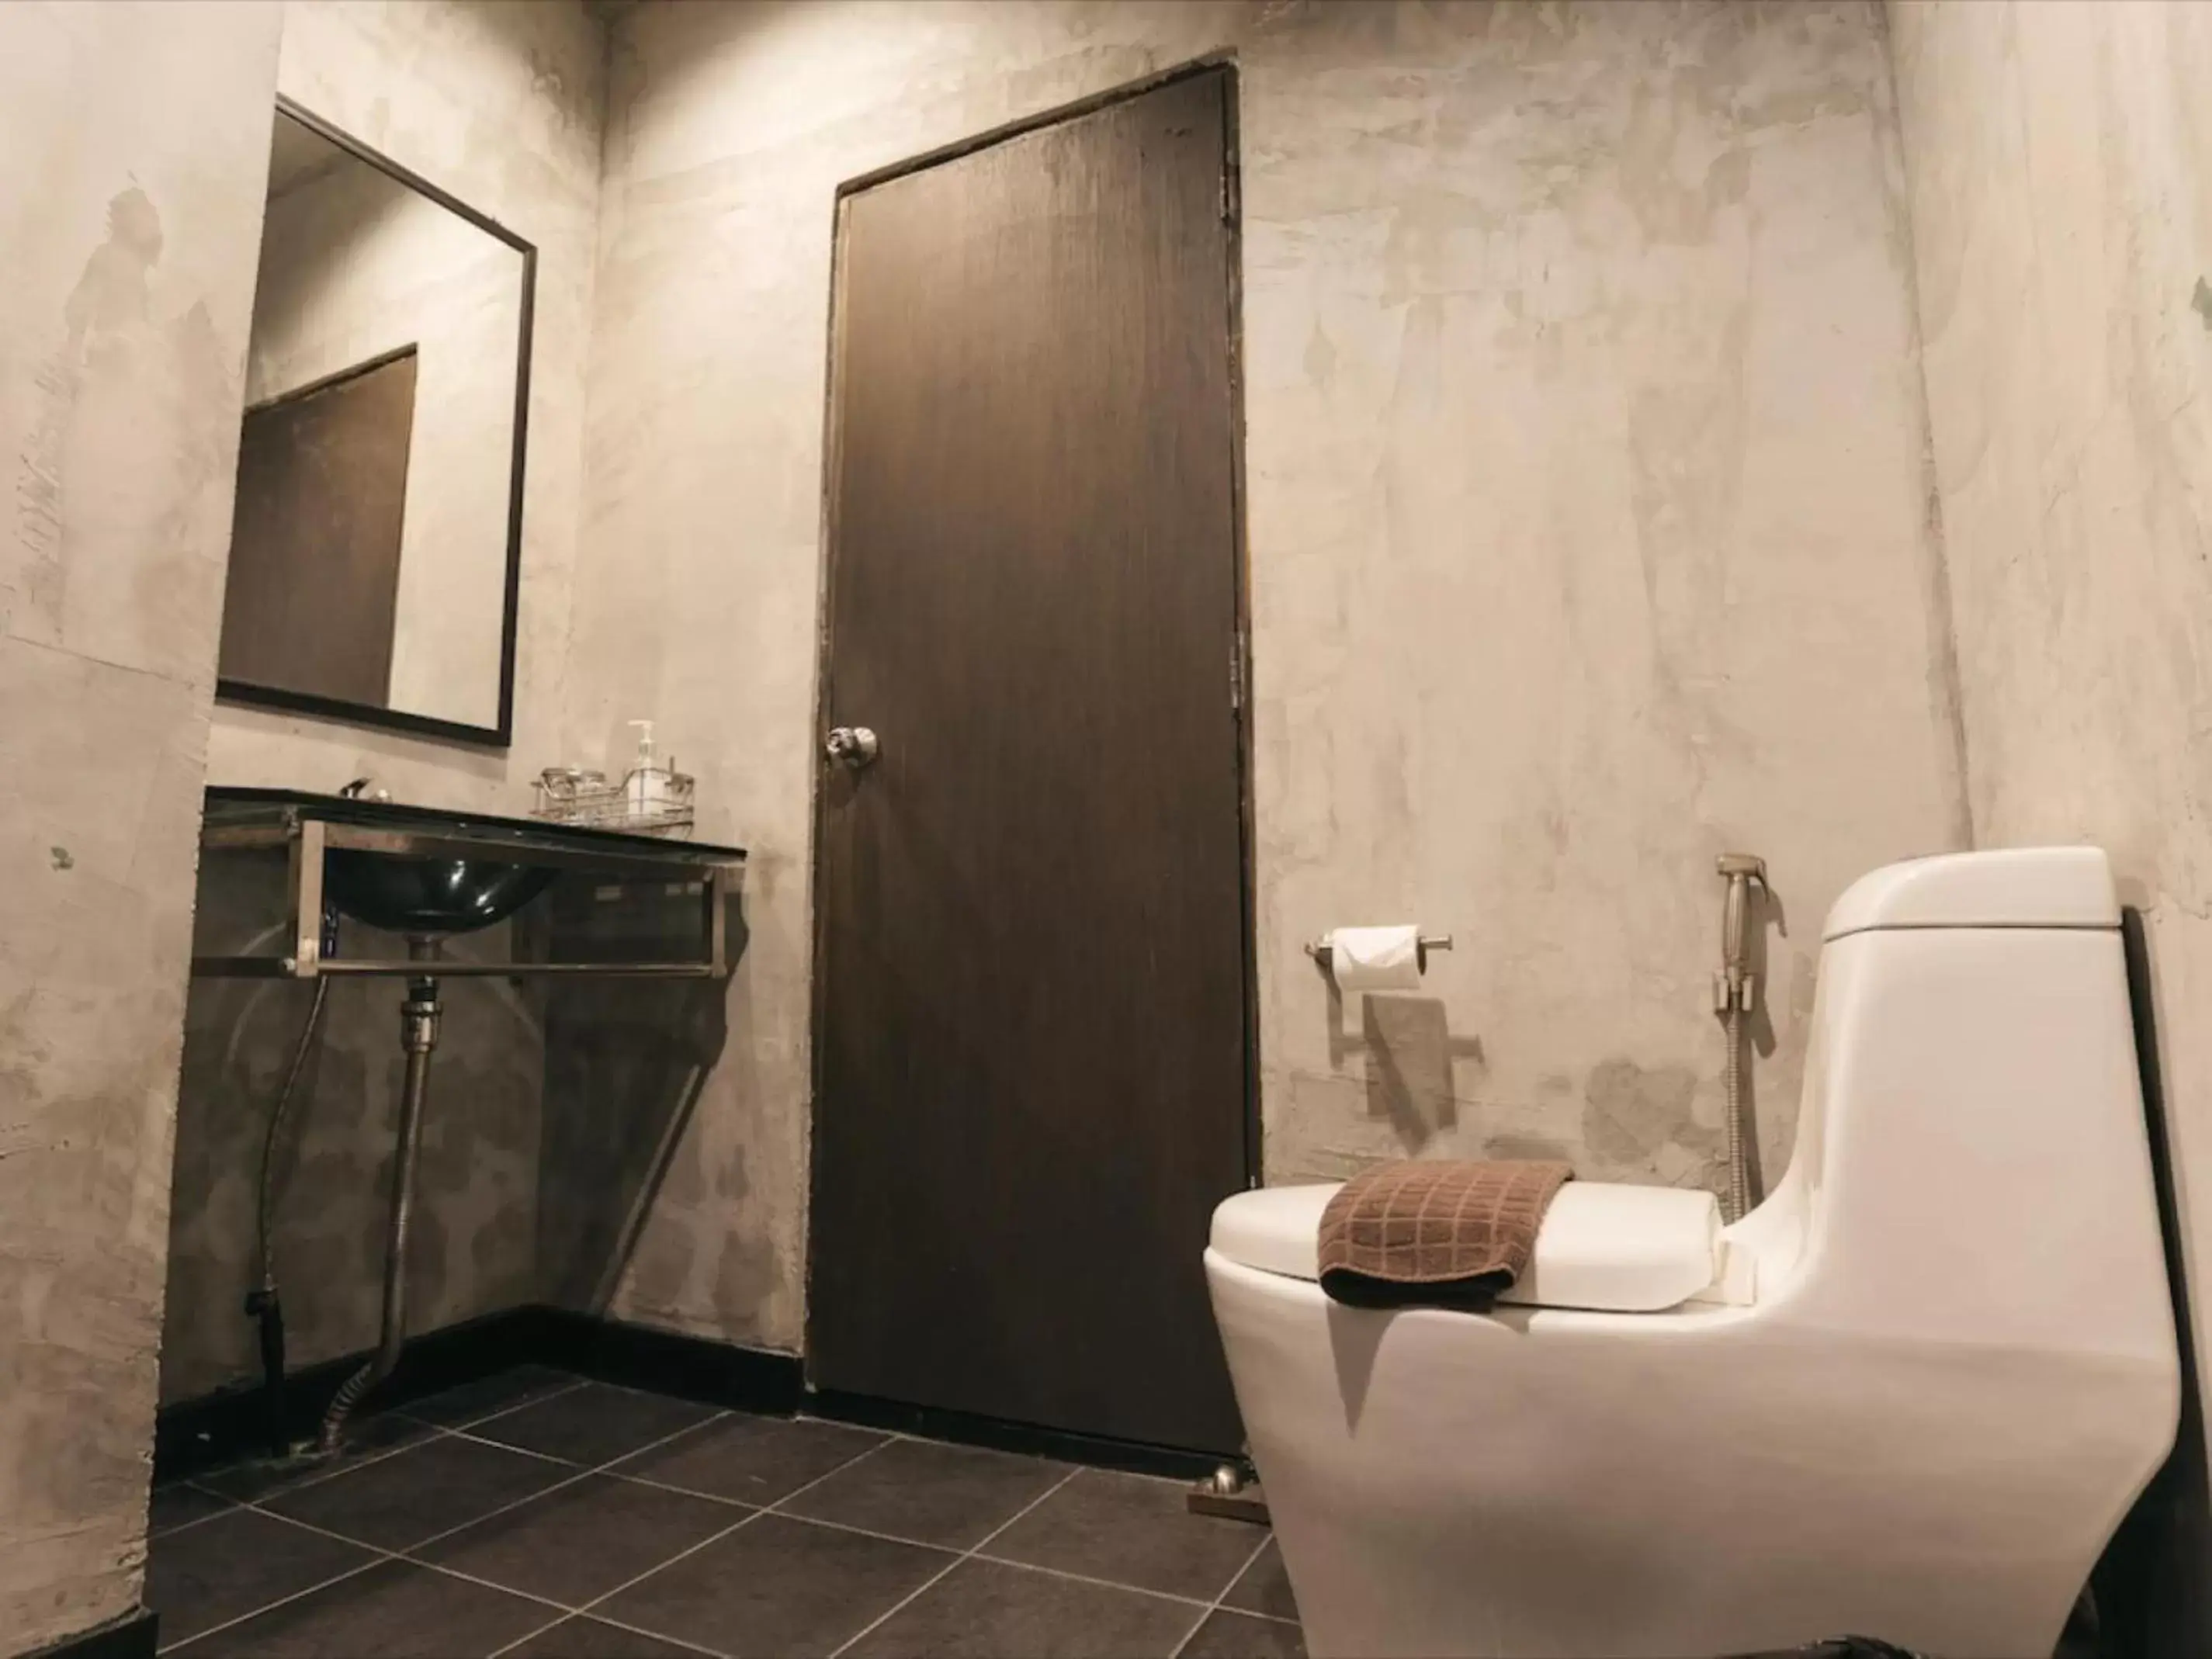 Bathroom in Samantan Hotel at Nimman